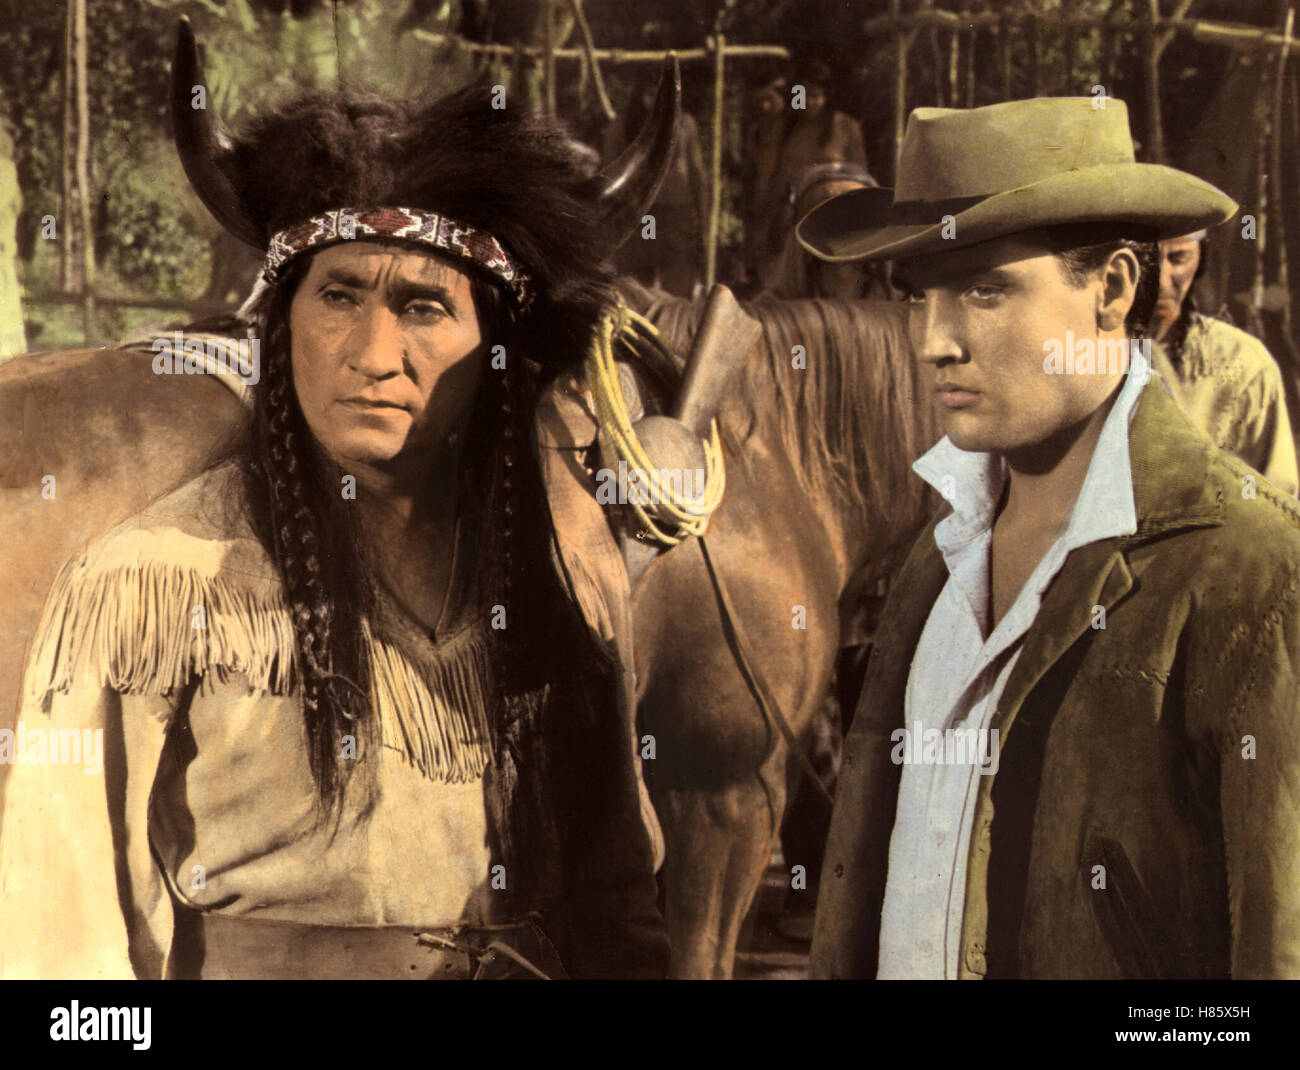 Flammender Stern, (Stella fiammeggiante) USA 1960, Regie: Don Siegel, RUDOLPH ACOSTA + ELVIS PRESLEY, Stichwort: Indianer, cowboy Foto Stock